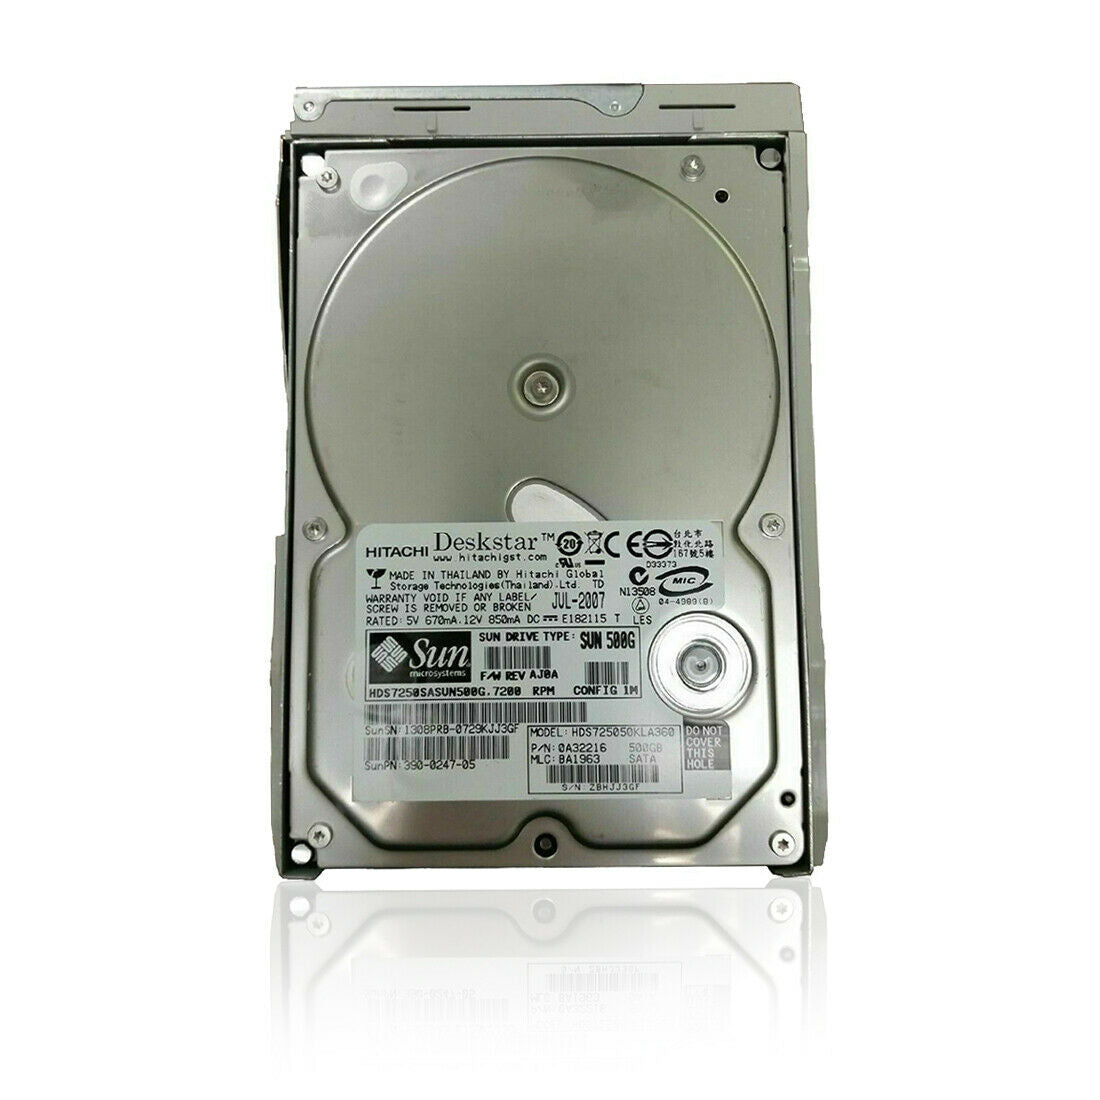 Hitachi 3.5" Sun HDD 500GB 7200rpm Internal Hard Drive 0A32216 HDS7250SASUN500G